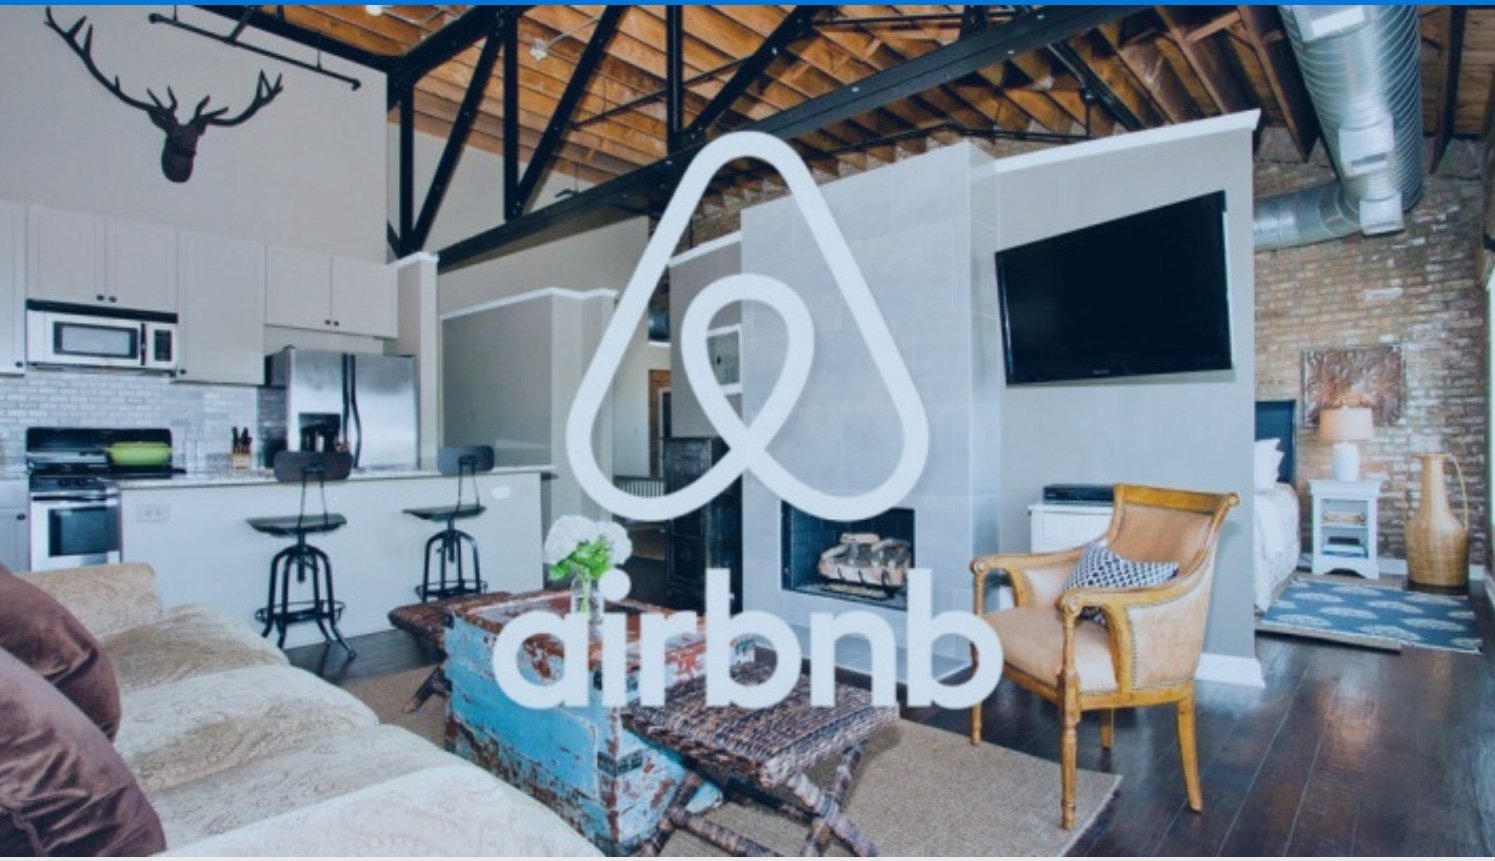 Αχ.Κουτσουράδης: Ασαφές και χαοτικό το νομικό πλαίσιο για τα airbnb καταλύματα